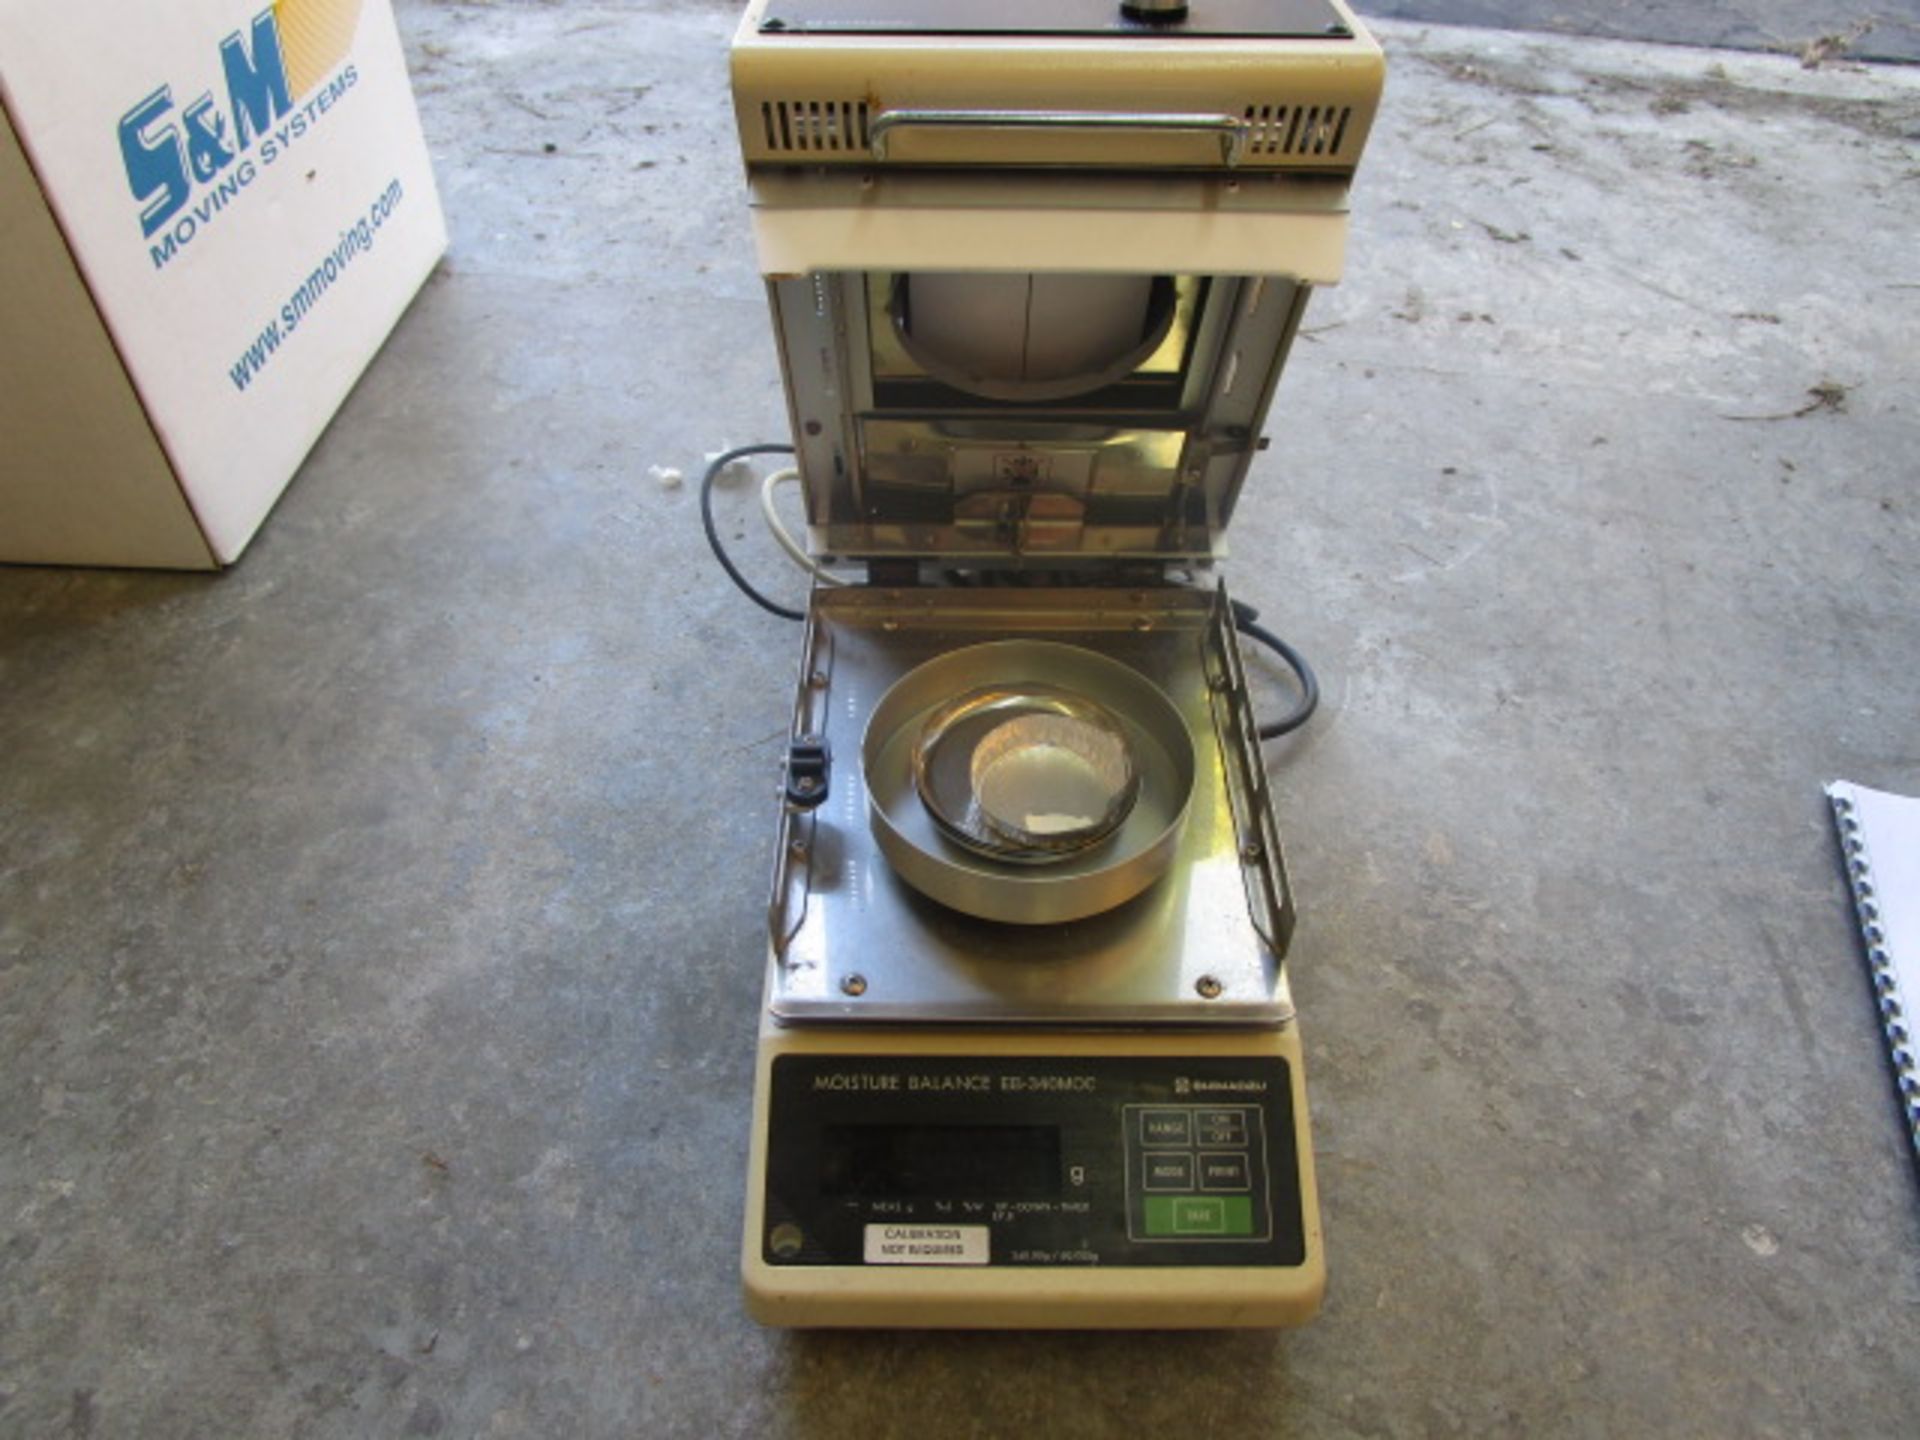 Shimadzu moisture balance EB-340MOC with Shimadzu Heater unit with instruction manual - Image 6 of 11